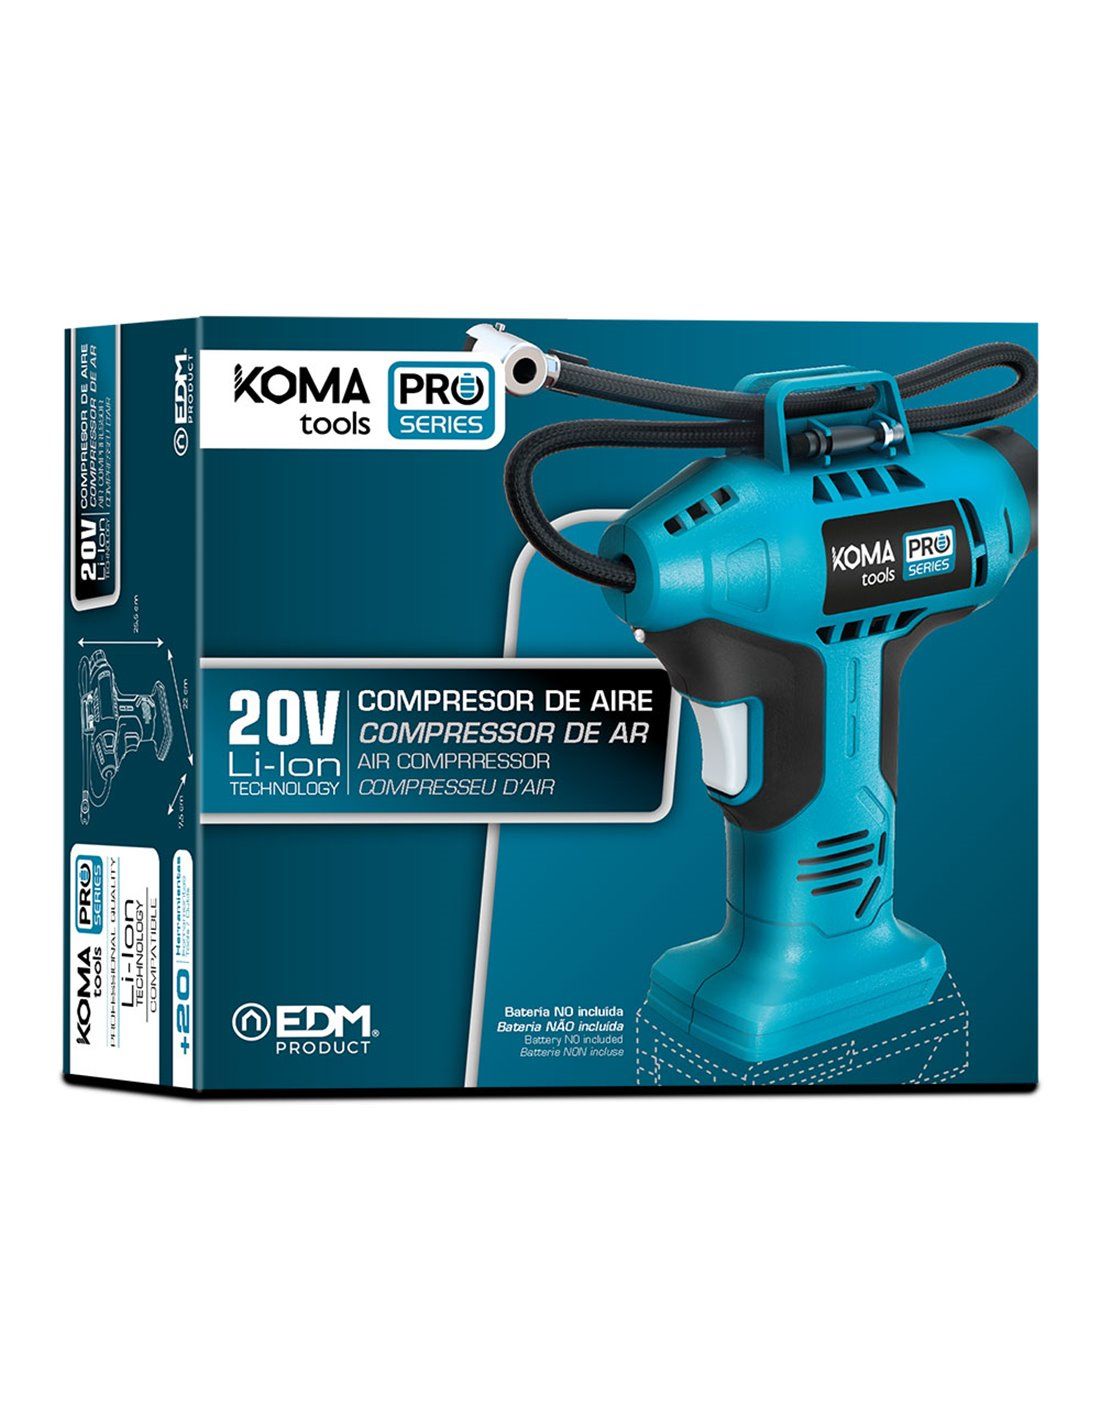 Compresseur d'air 20v (sans batterie ni chargeur) 7.5x22x25.5cm batterie  koma tools pro series